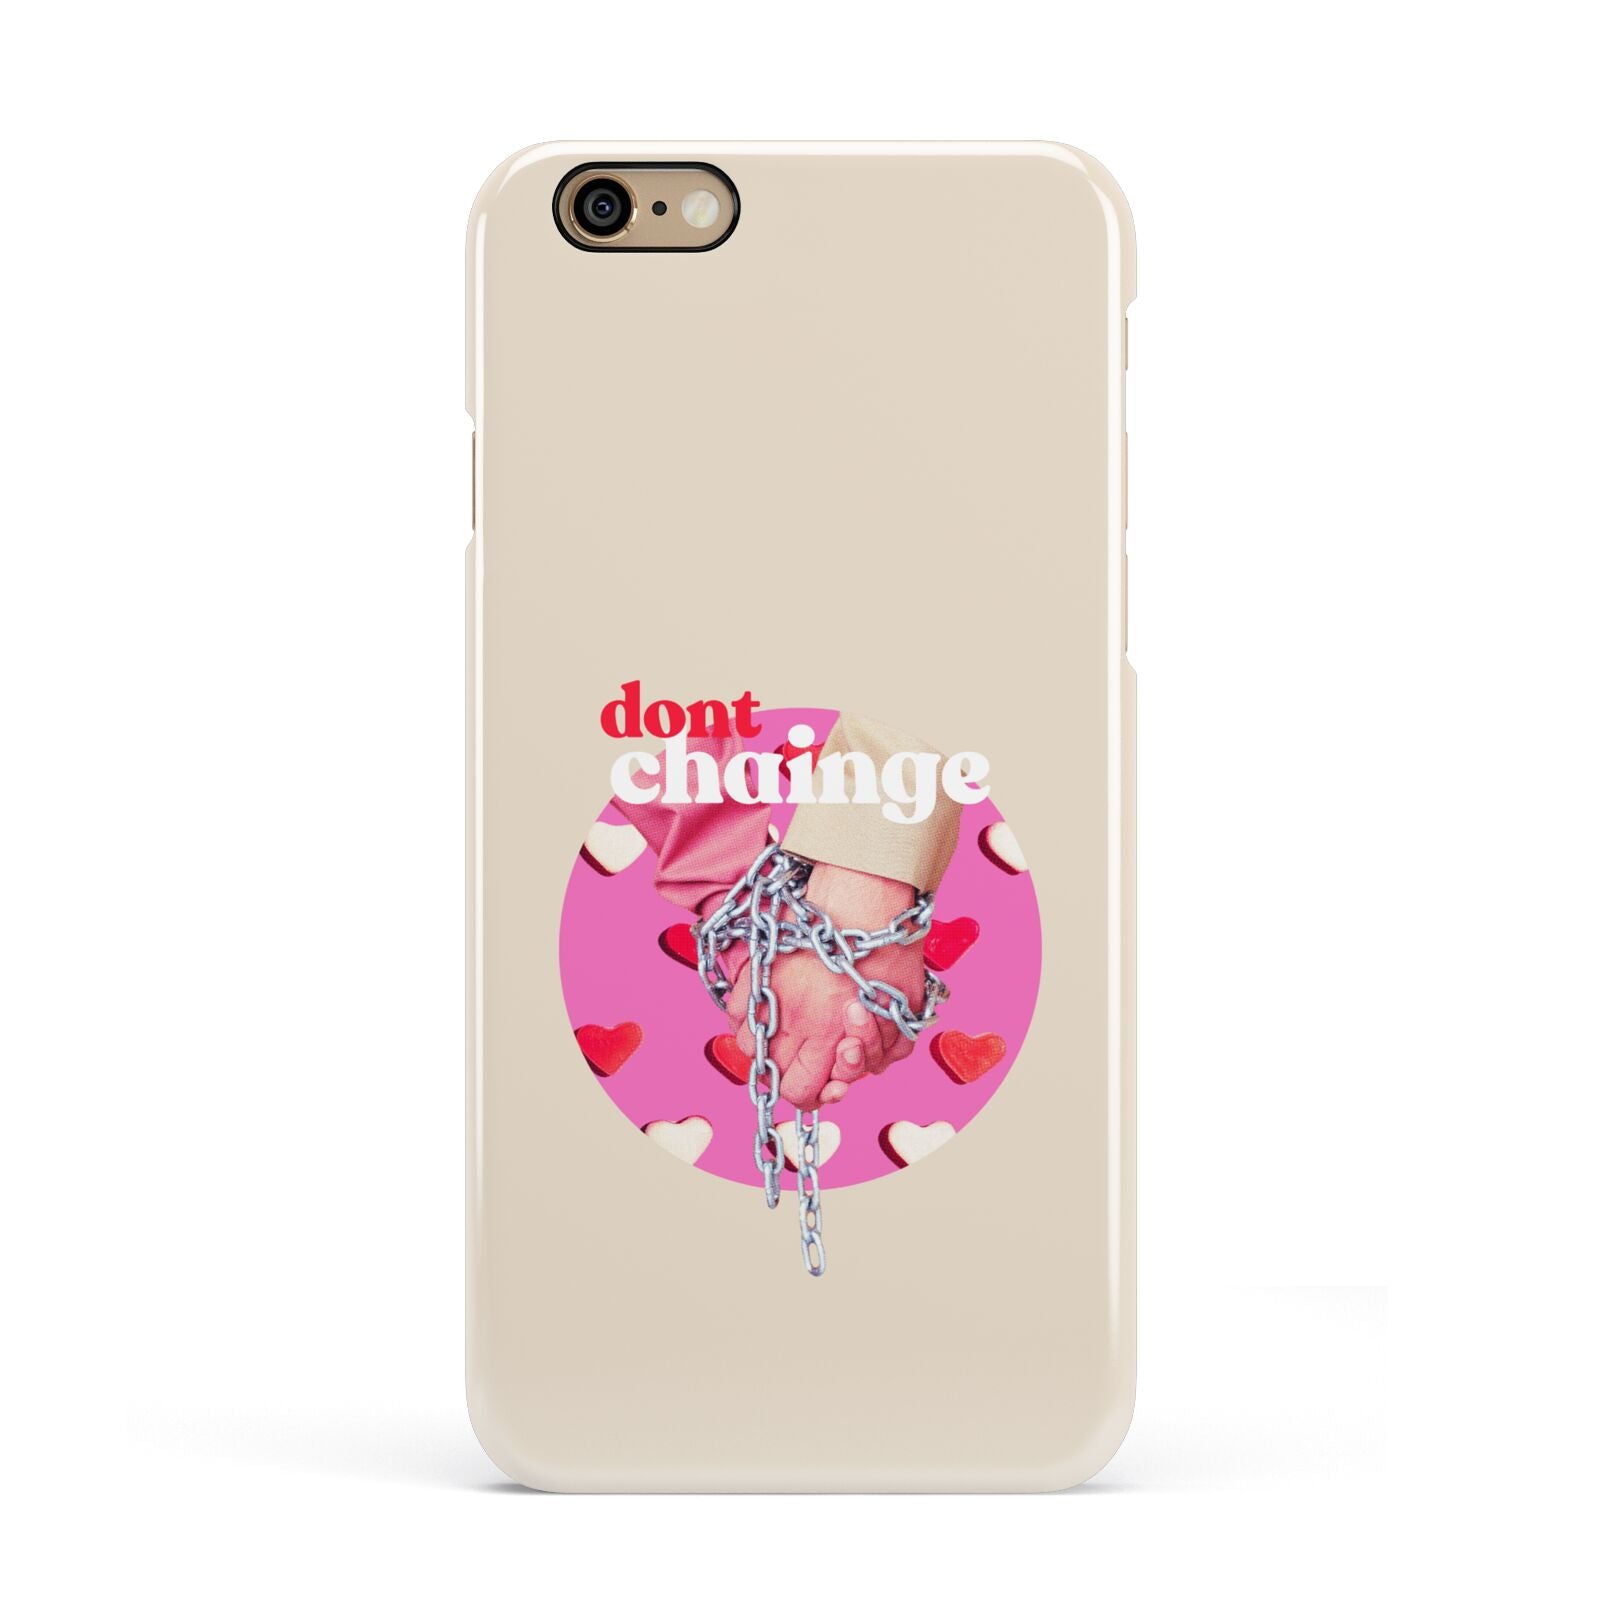 Retro Valentines Quote Apple iPhone 6 3D Snap Case